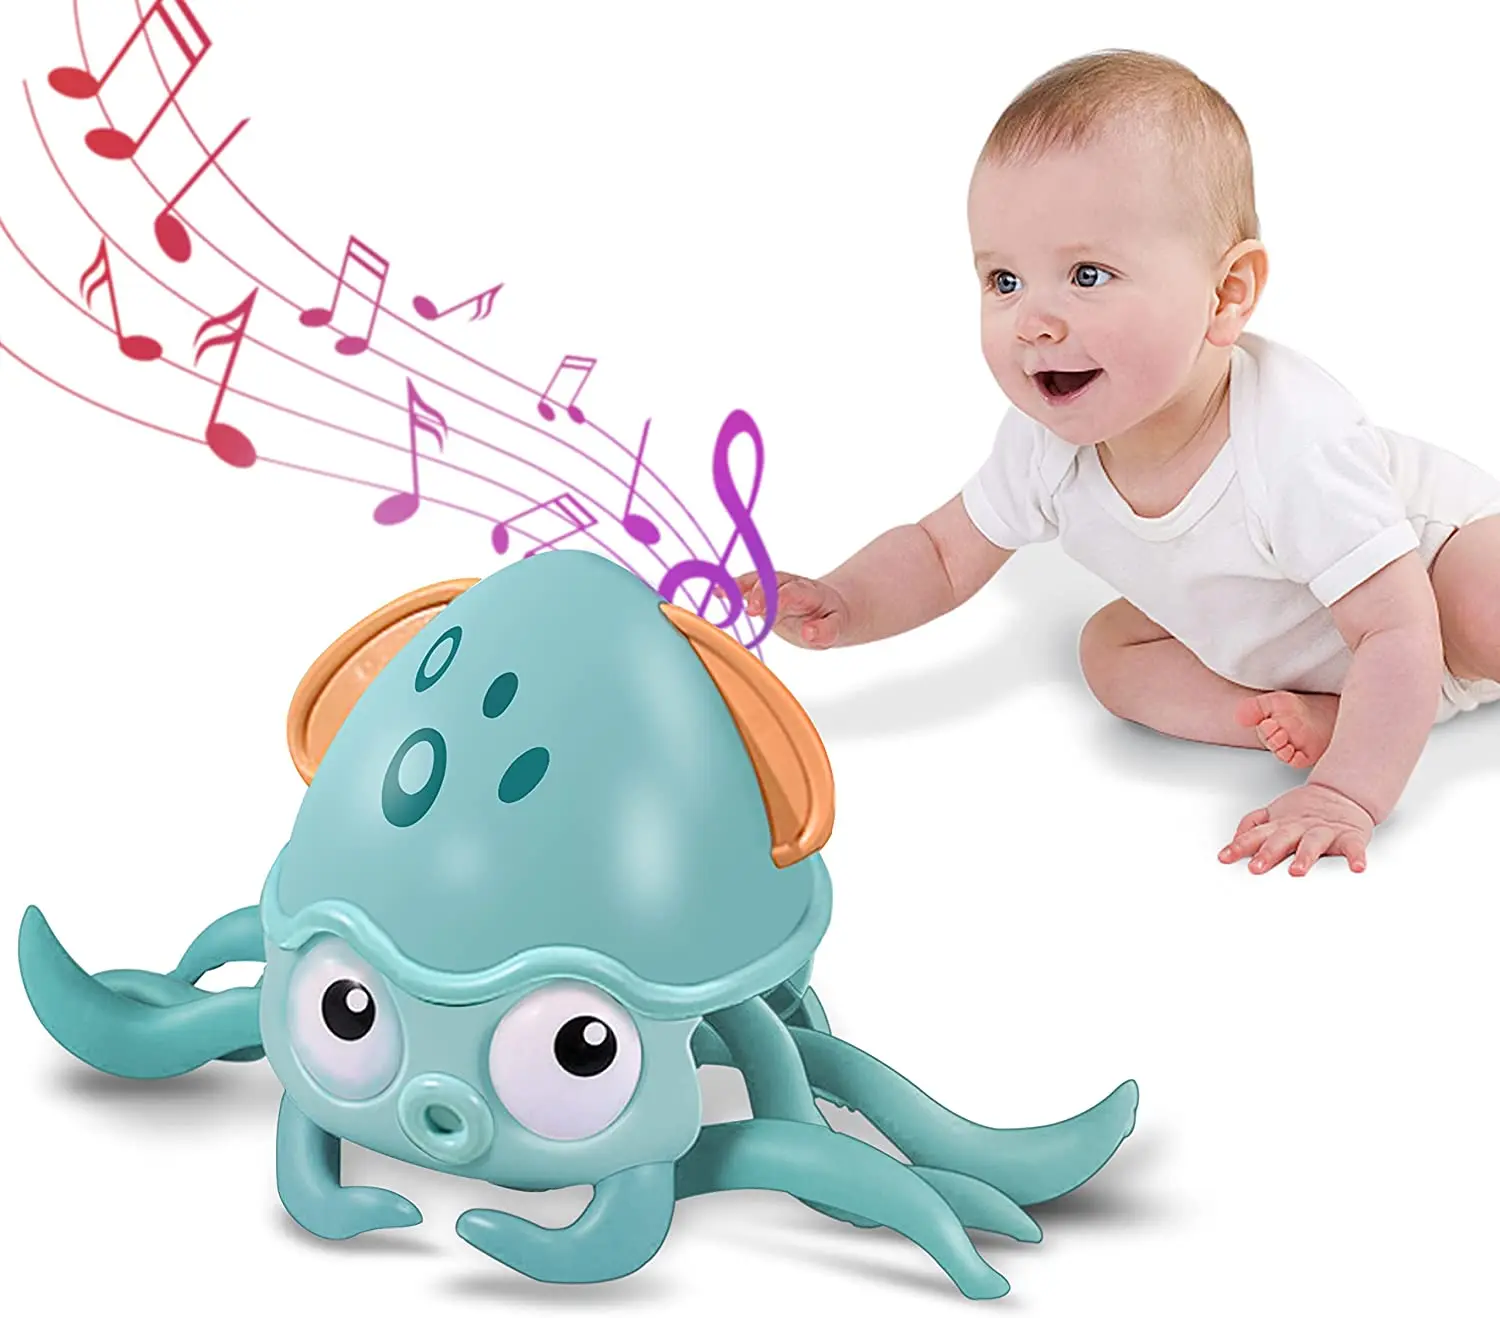 

Детский Электронный милый Краб для ползания, игрушка-осьминог, музыкальсветильник, Игрушки для раннего развития ребенка, подарок